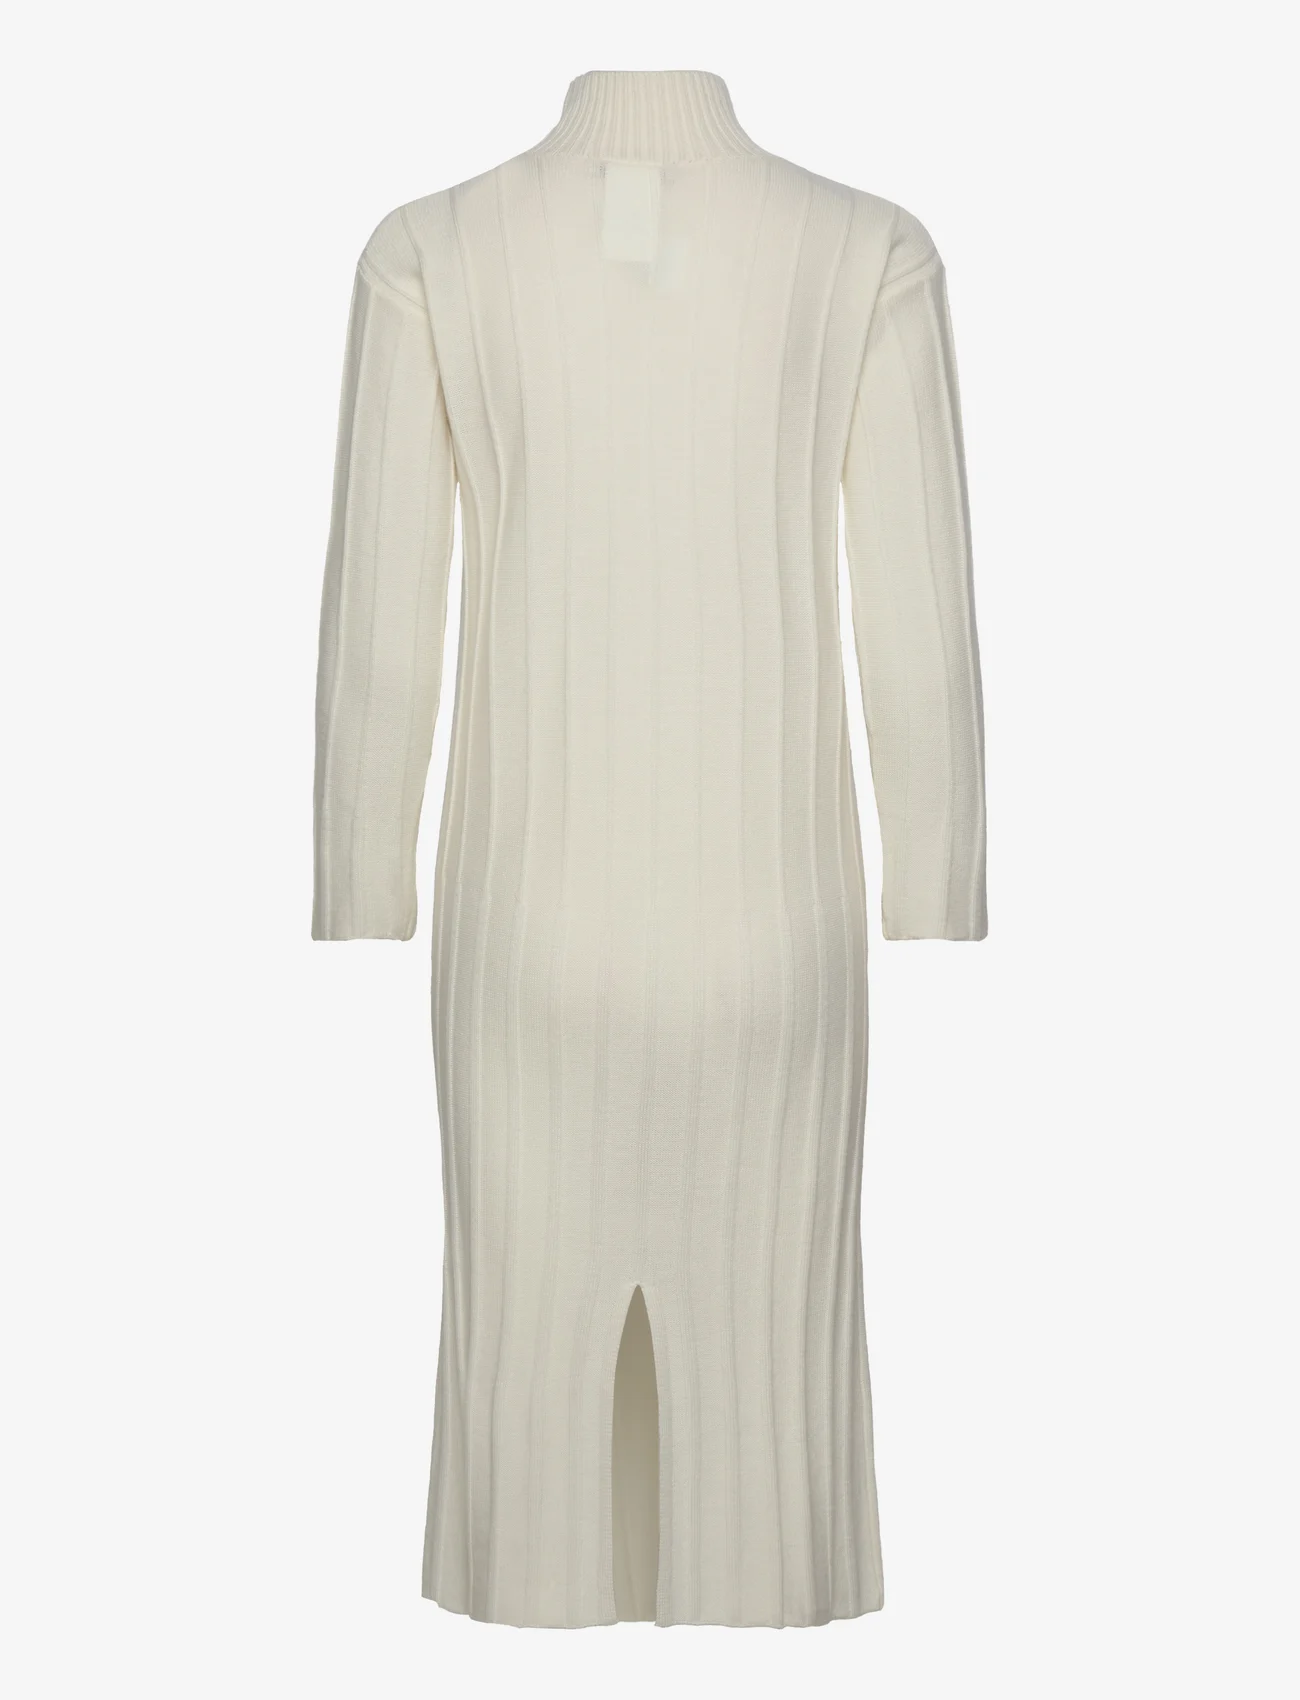 Max Mara Leisure - AREZZO - knitted dresses - white - 1